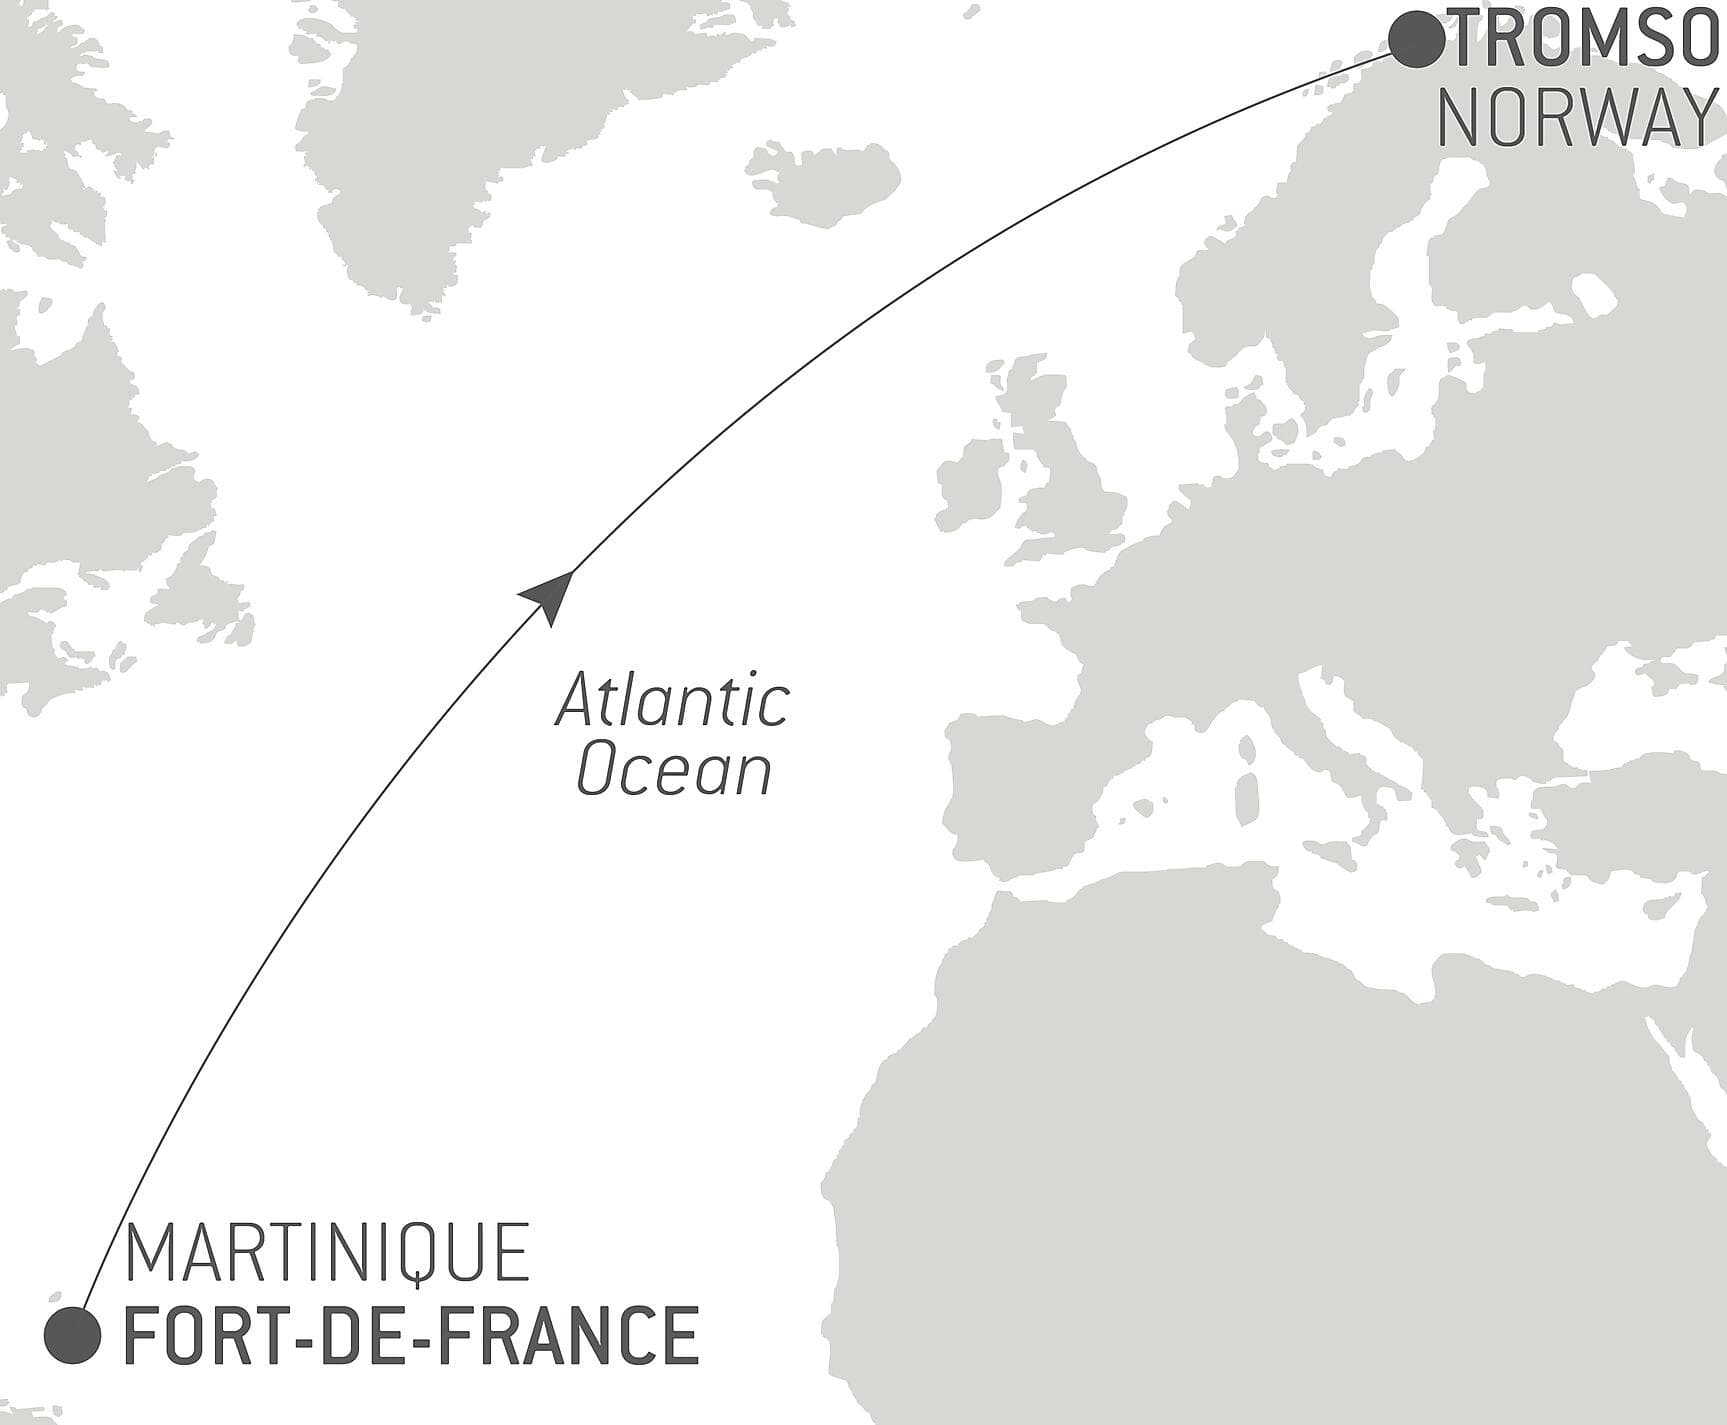 Ocean Voyage: Fort-de-France - Tromso